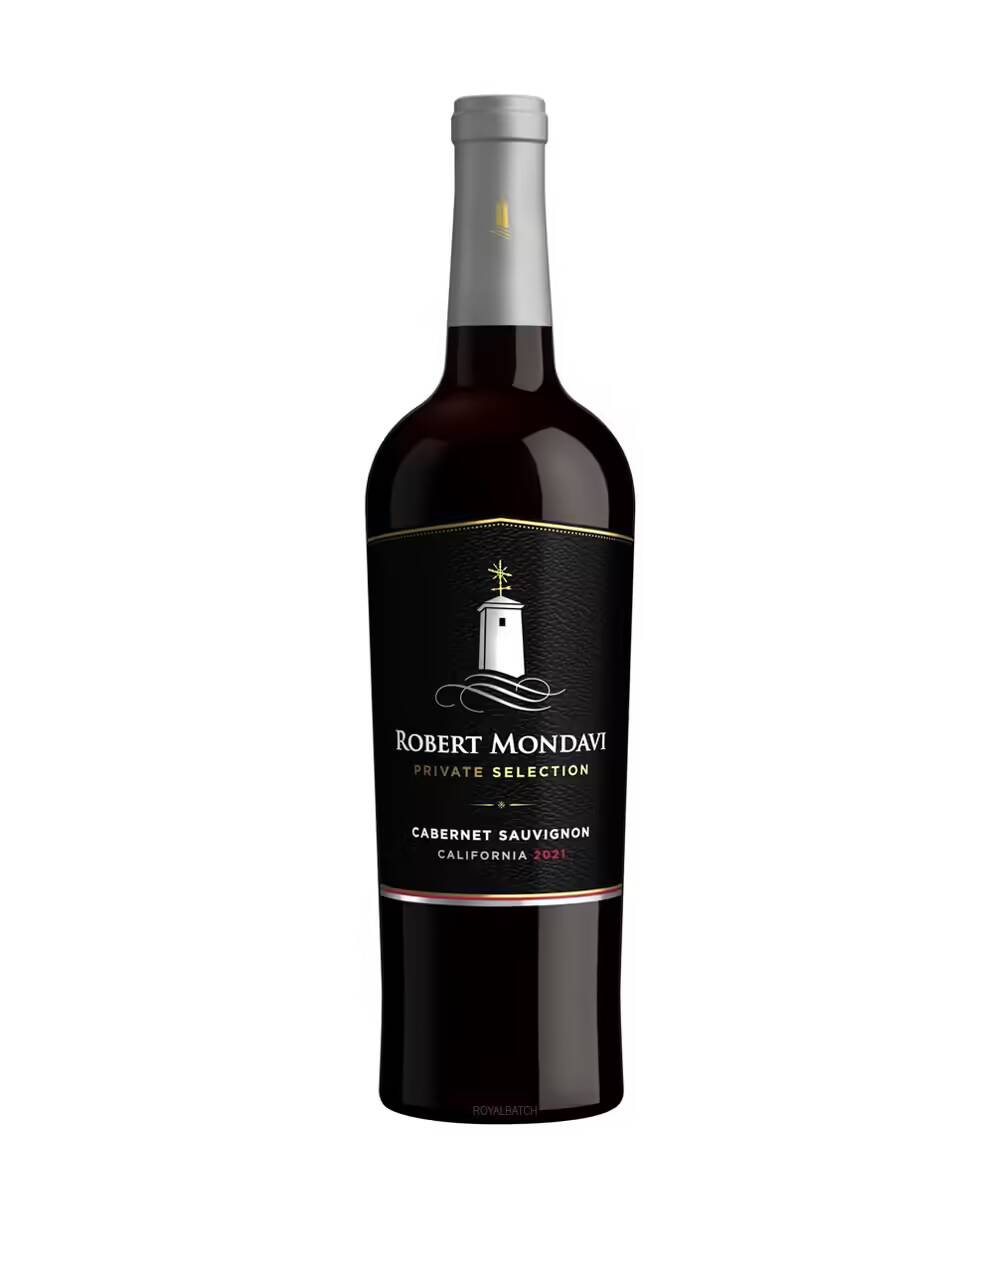 Robert Mondavi Private Selection Cabernet Sauvignon 2021 Wine